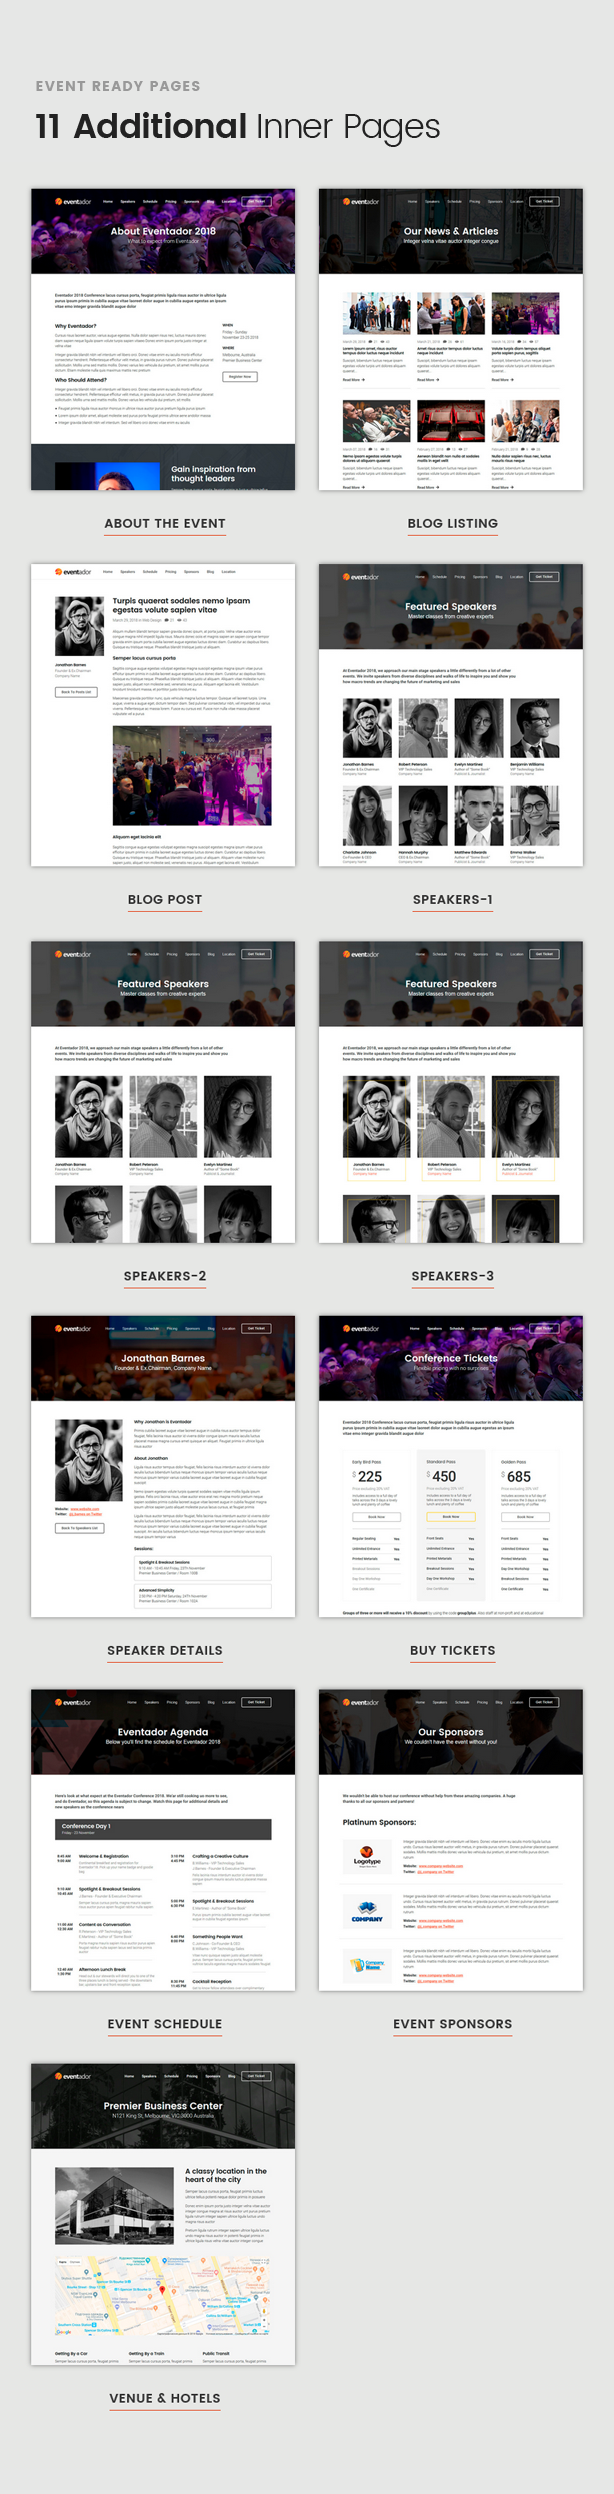 EventAdor Event Marketing WordPress Theme